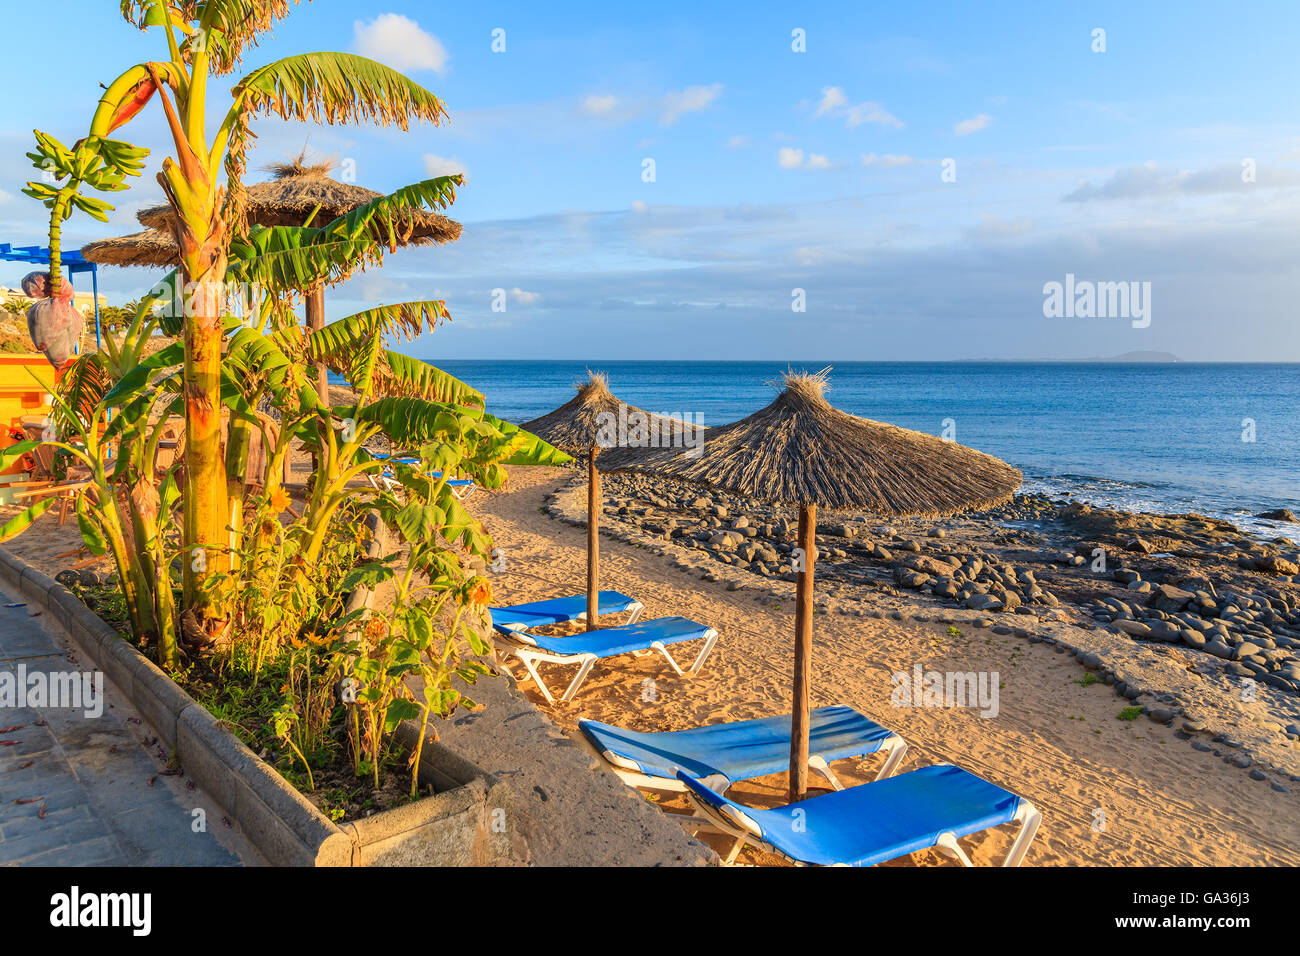 Albero di banana e la fila di sedie a sdraio e ombrelloni sulla spiaggia Playa Blanca spiaggia al tramonto, Lanzarote, Isole Canarie, Spagna Foto Stock